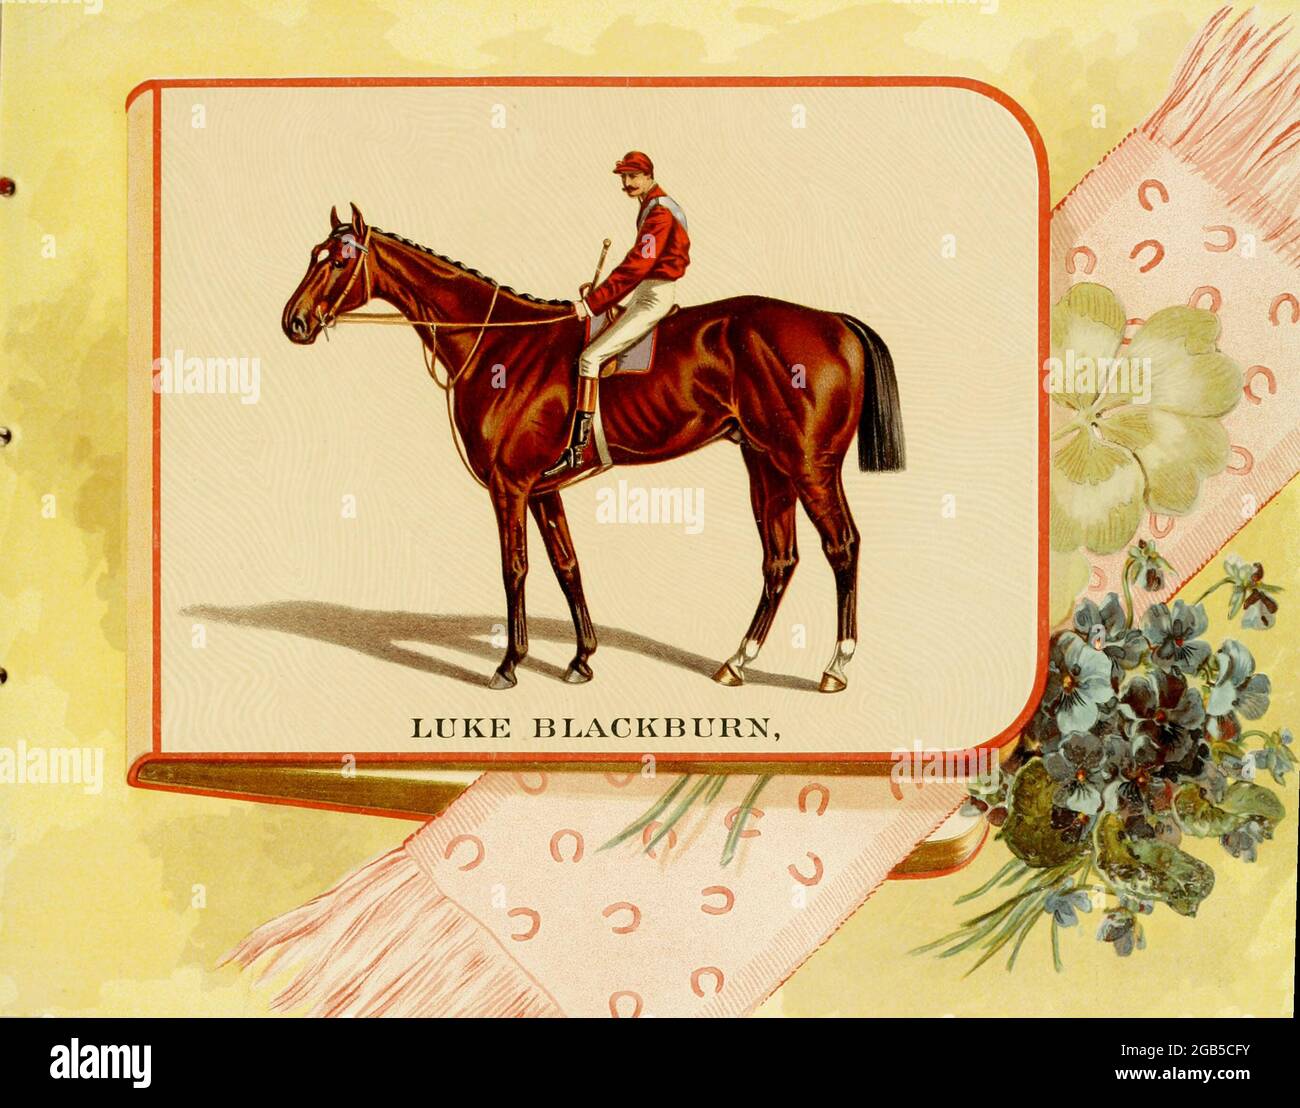 Luke Blackburn (1877–1904) est un cheval de race pur-sang né et élevé au Tennessee par le capitaine James Franklin. Il a été intronisé dans le Hall of Fame des courses hippiques des États-Unis en 1956. De l'album des célèbres chevaux de course américains et anglais de Kinney Bros publié dans New Your en 1888 par Kinney Brothers pour faire progresser les ventes de leurs marques de cigarettes. La Kinney Tobacco Company était une entreprise américaine de fabrication de cigarettes qui a créé la marque de cigarettes Sweet Cabucal et l'a promue avec des cartes de collection. Étant l'un des principaux fabricants de cigarettes des années 1870-1880, il a fusionné en 1890 dans Banque D'Images